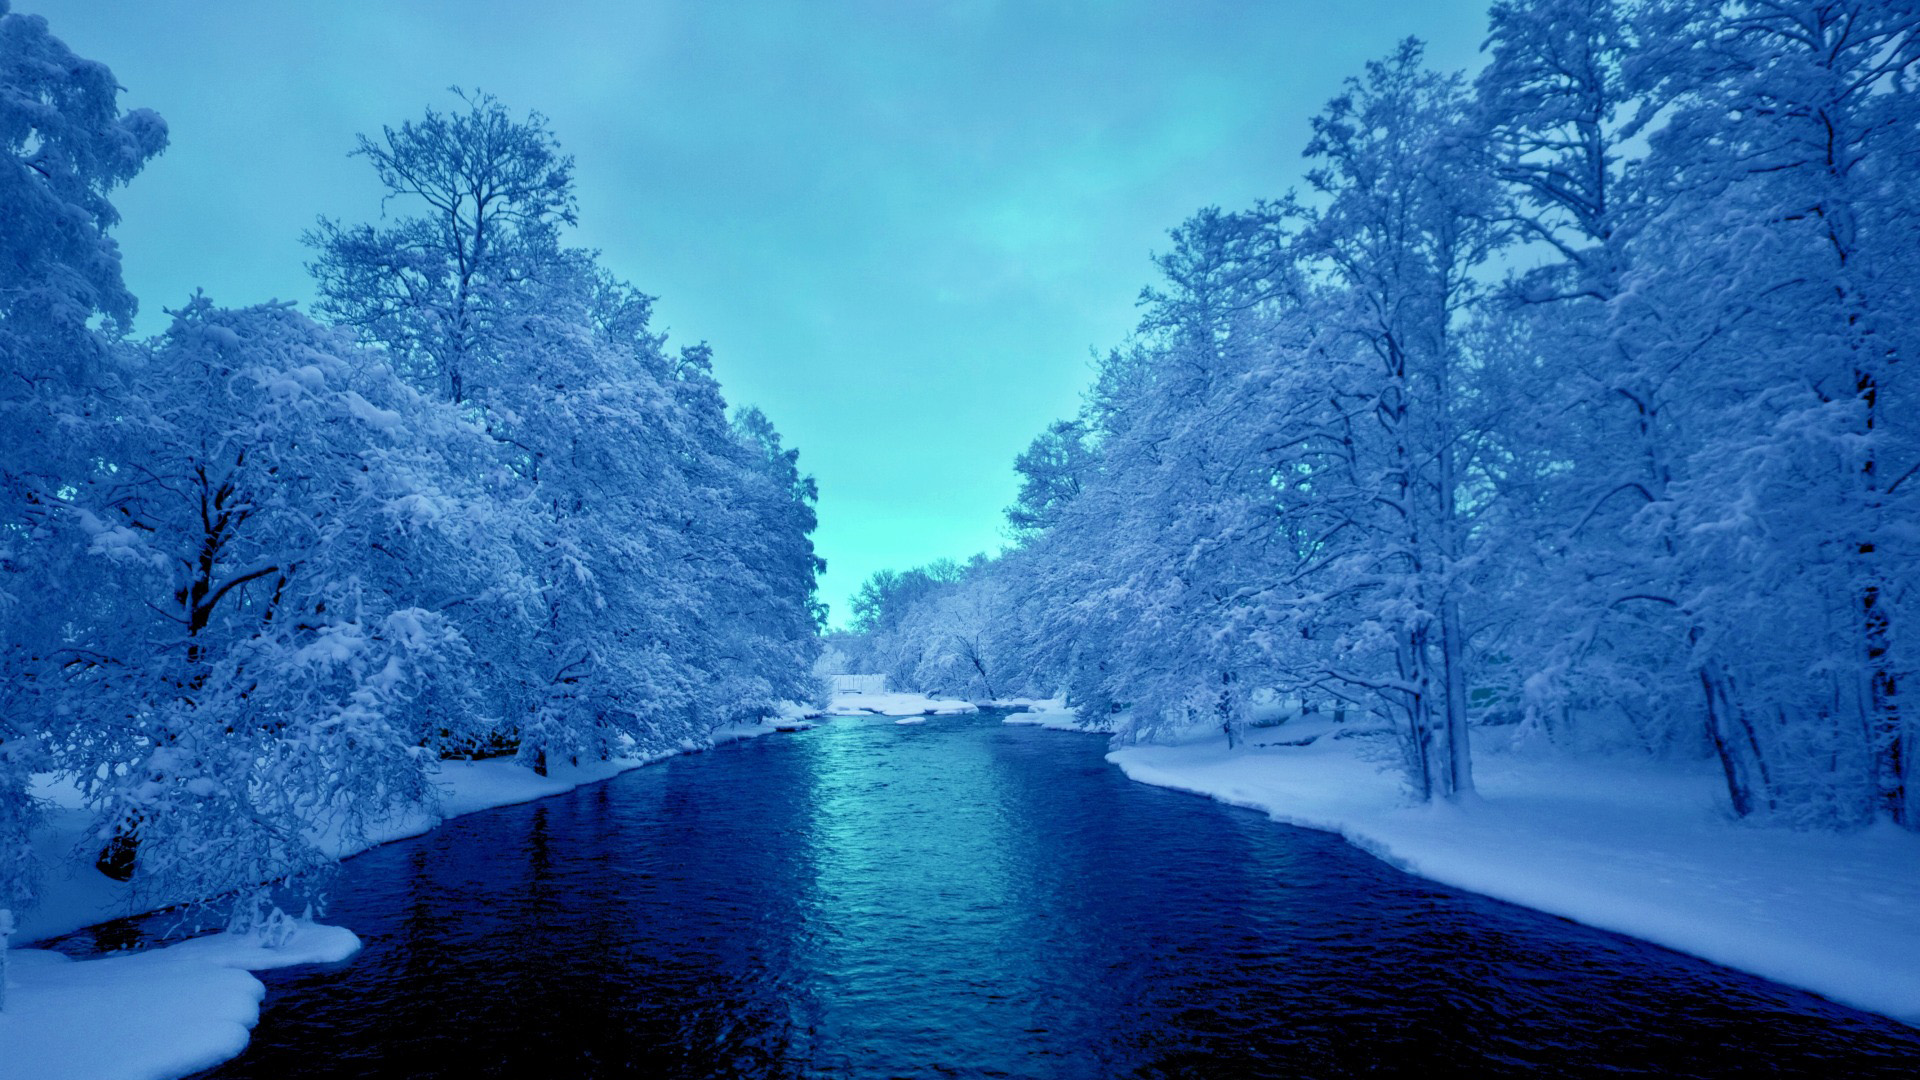 冬天,雪,树木,河流,天空,风景桌面壁纸